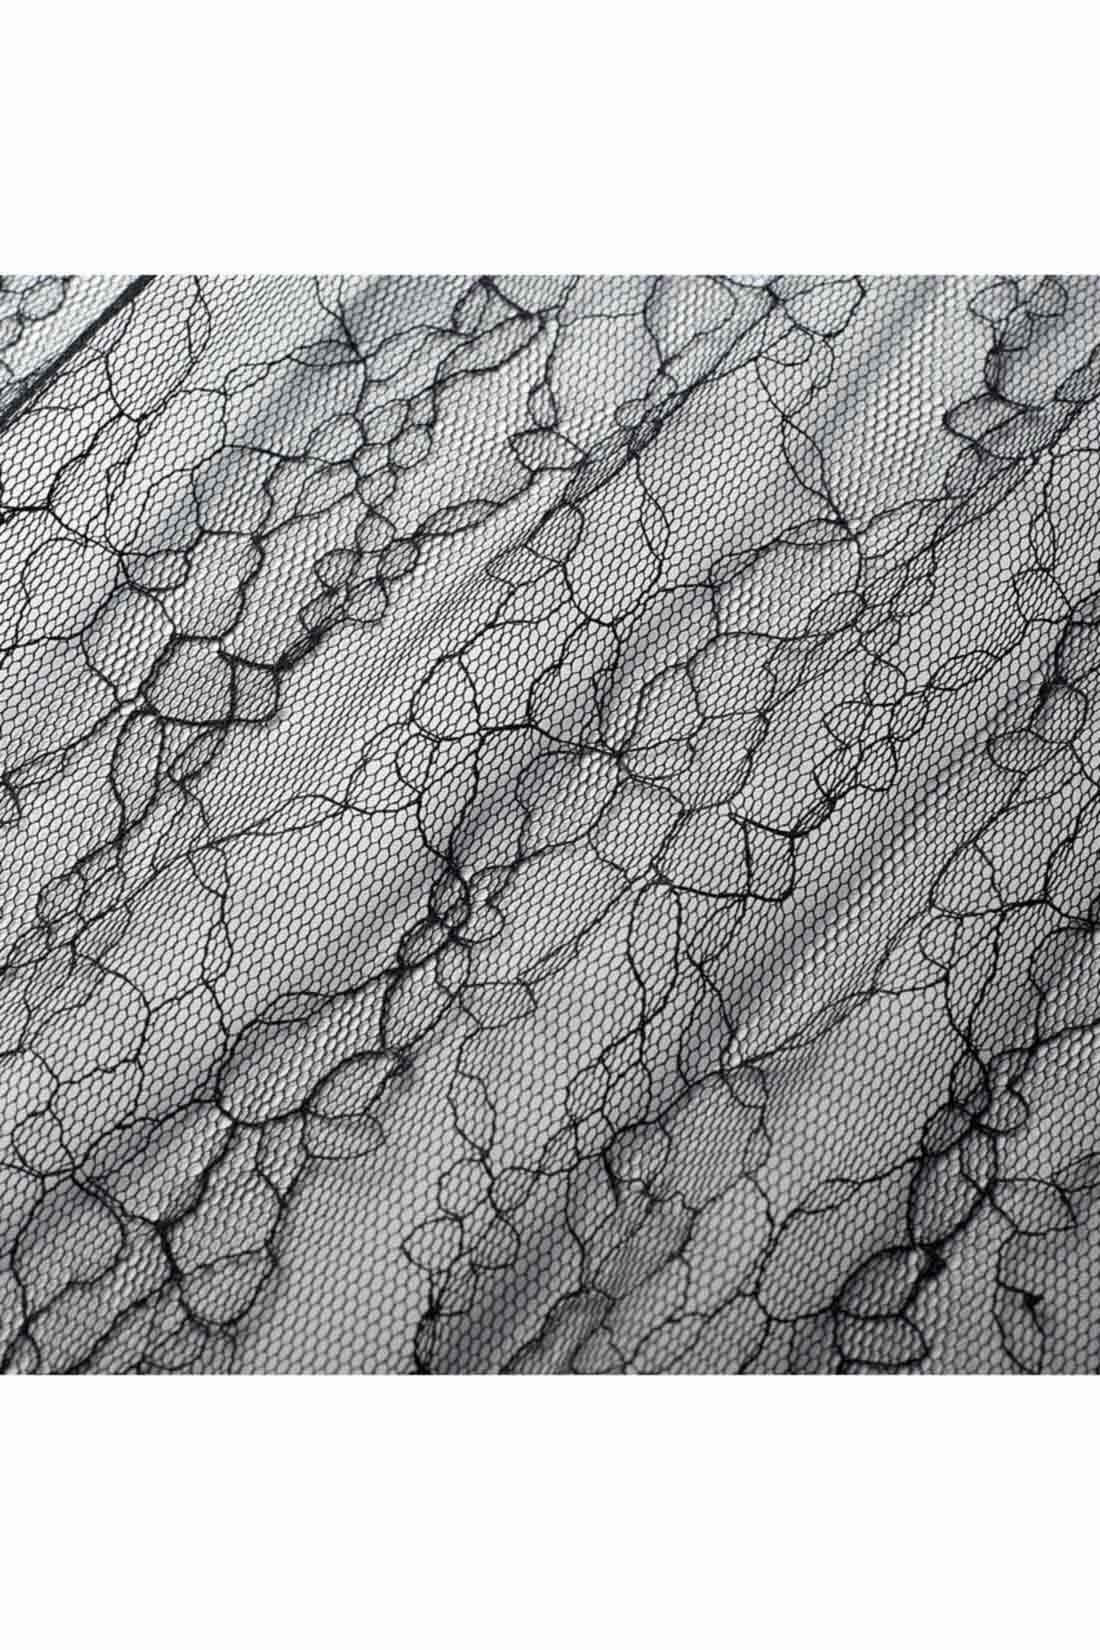 IEDIT[イディット]　コーデの幅が広がる チュールレーススカートセット〈ブラック〉|ふわりとエアリーでやわらかなチュールレース素材。透け感が上品な花モチーフ。